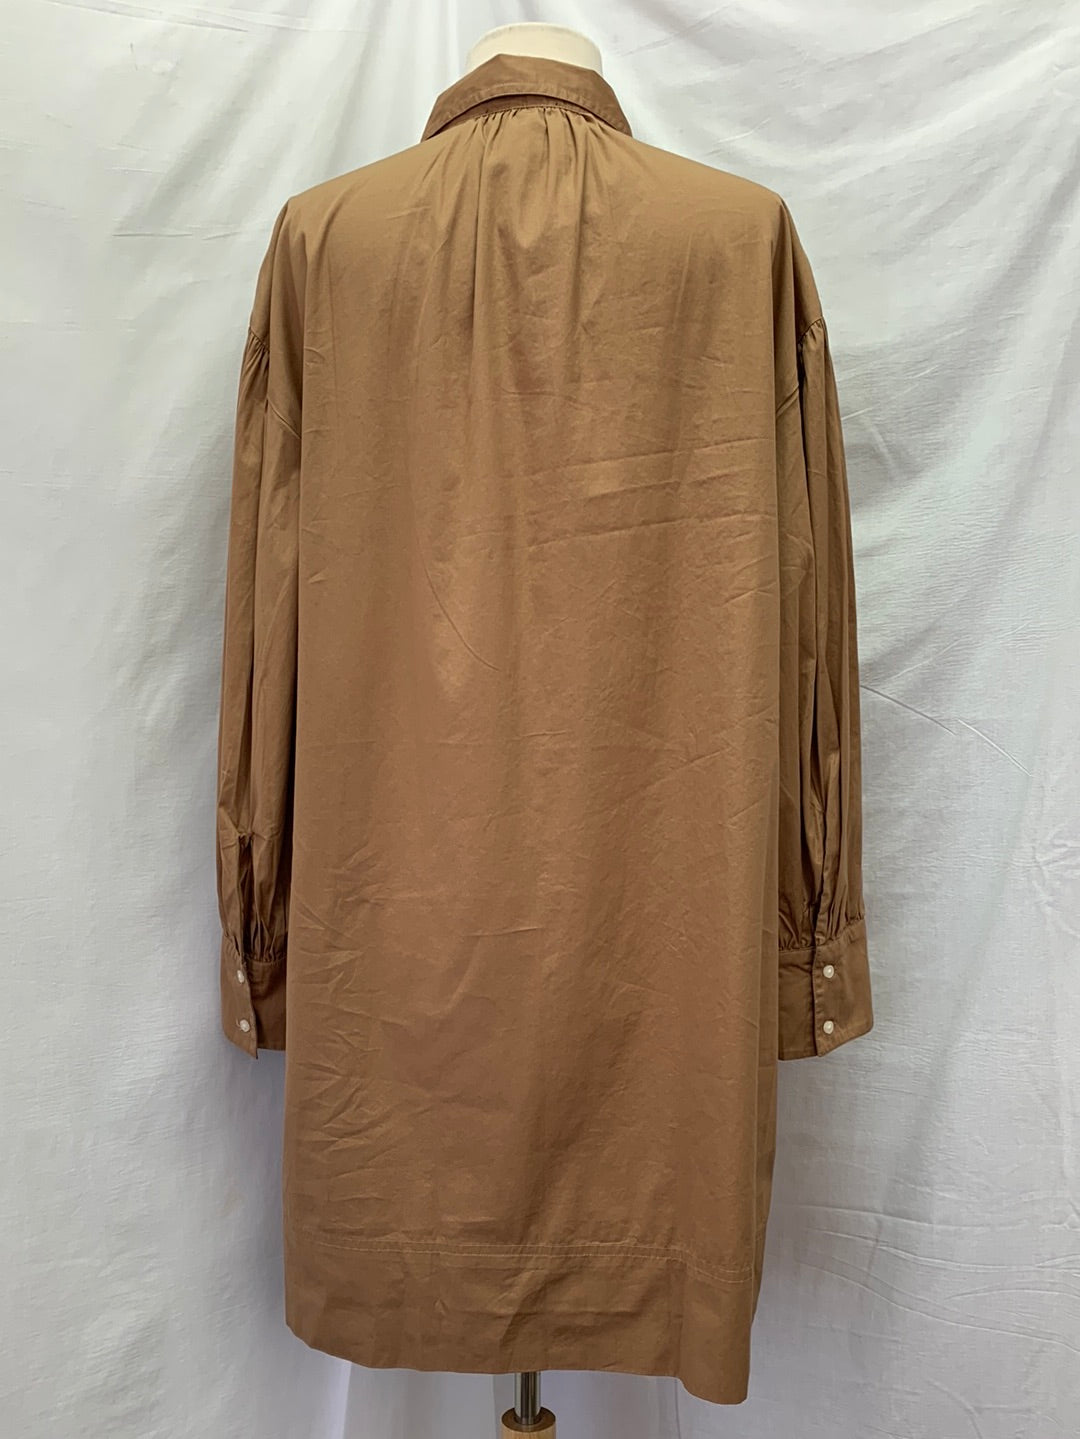 NWT - J CREW dark khaki Puff Sleeve Poplin Mini Shirt Dress - Medium